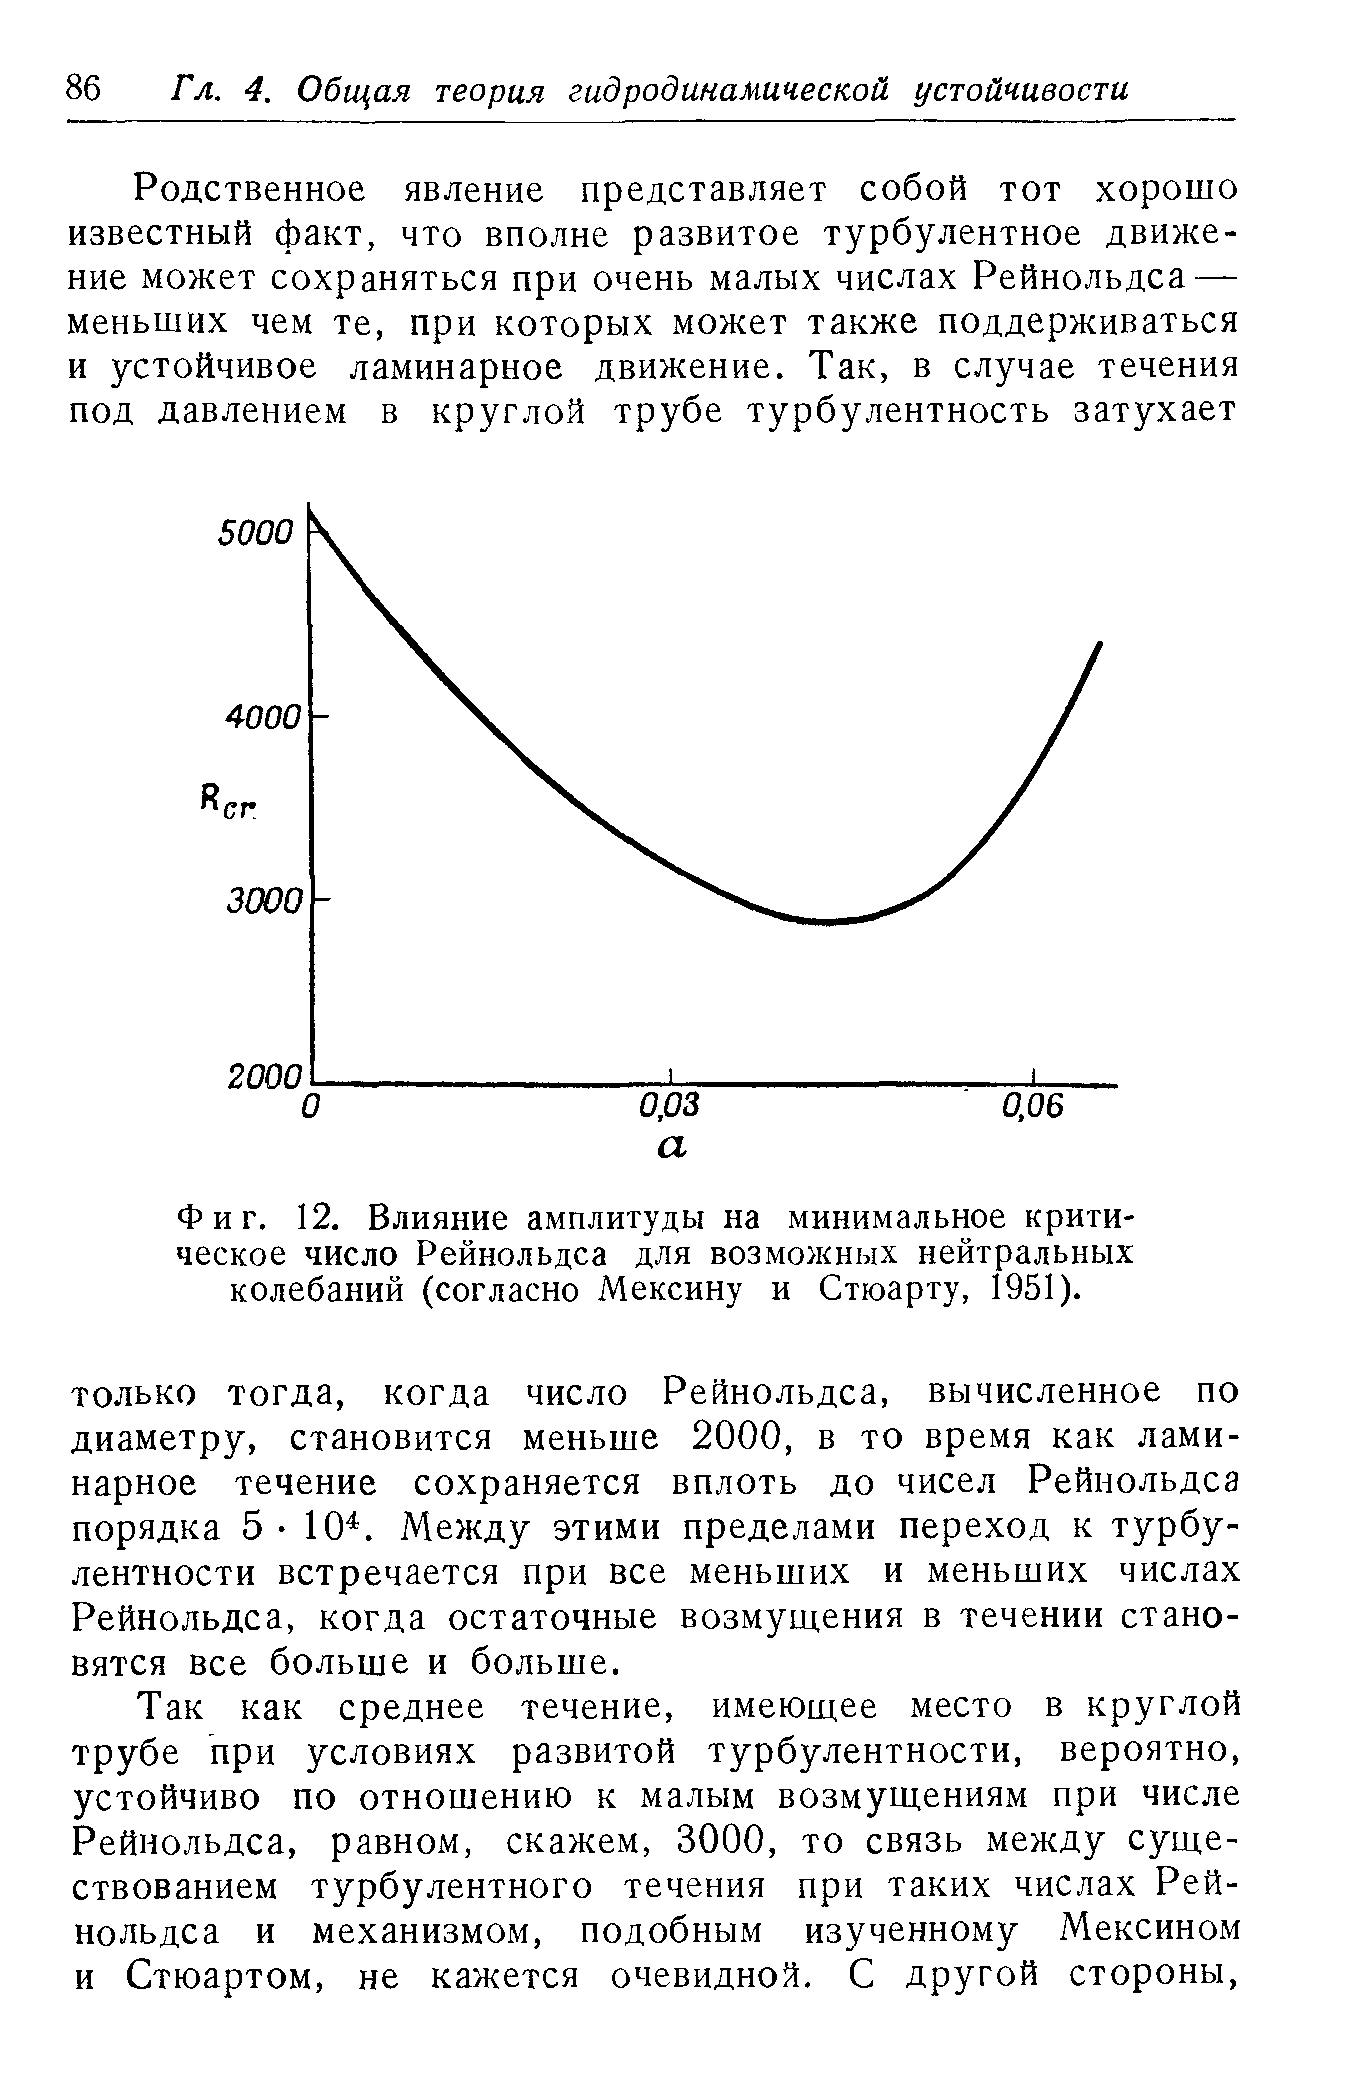 Фиг. 12. Влияние амплитуды на минимальное критическое число Рейнольдса для возможных нейтральных колебаний (согласно Мексину и Стюарту, 1951).
